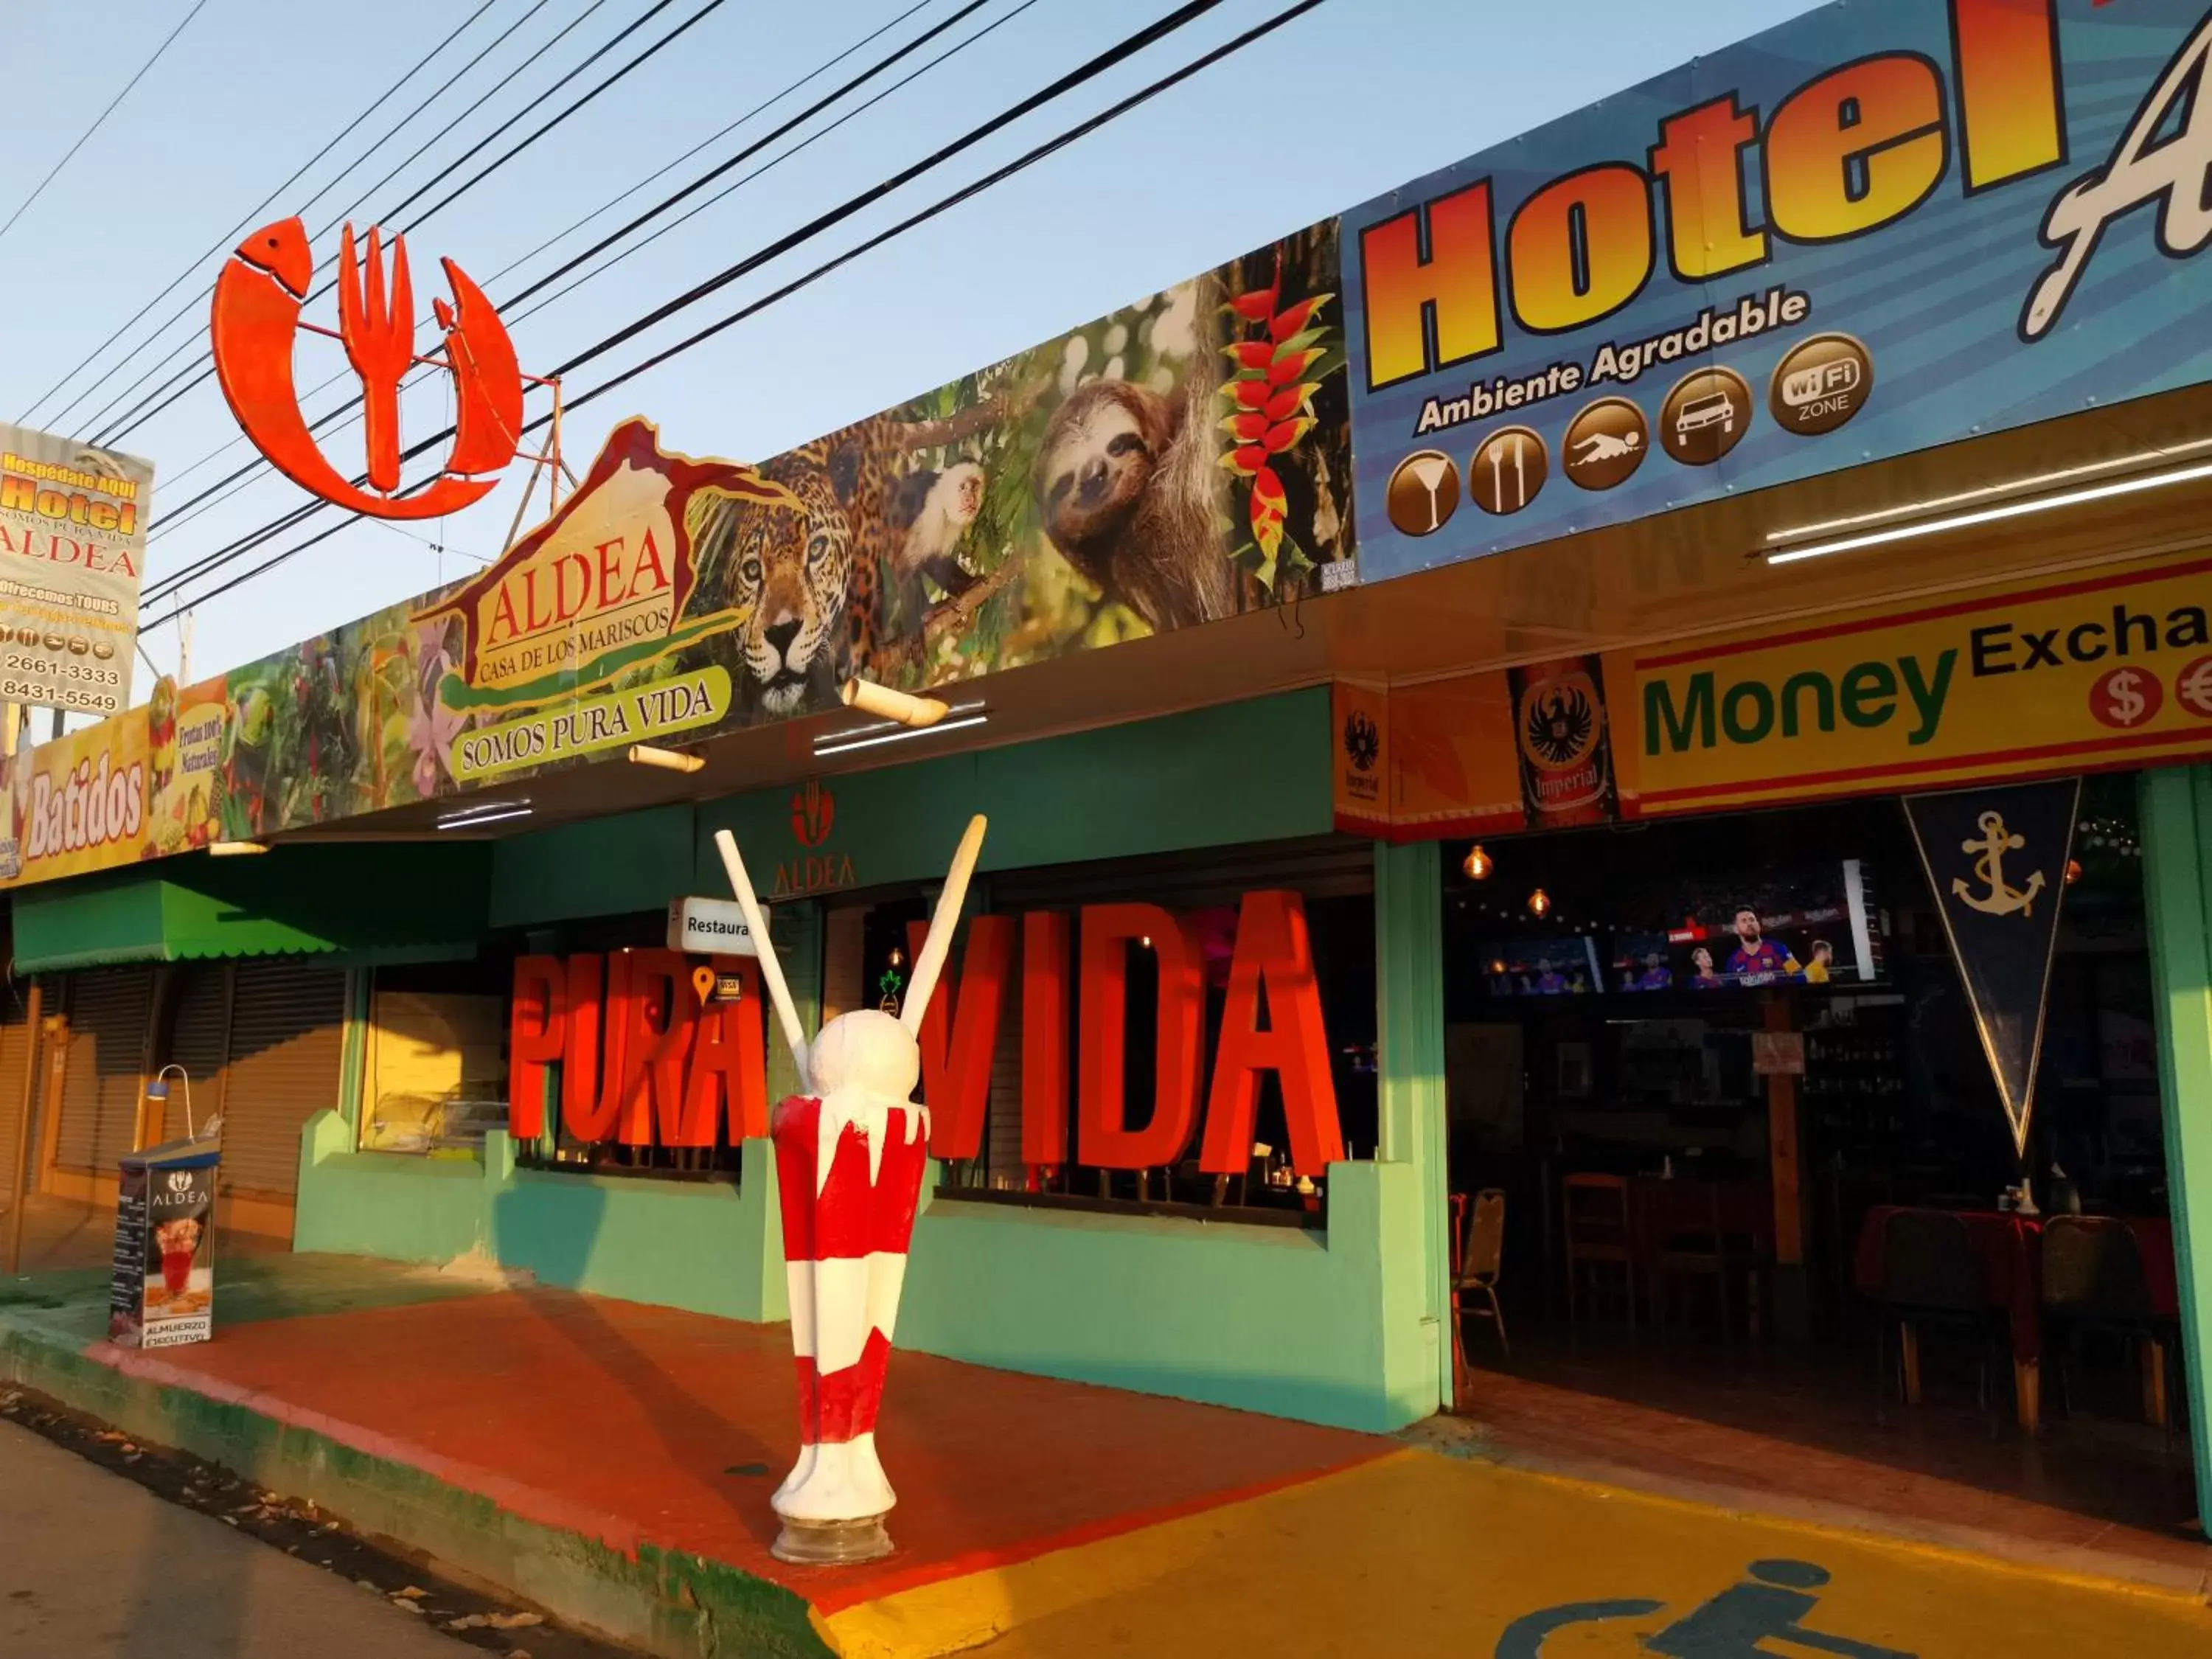 Restaurant/places to eat in Hotel Aldea Pura Vida